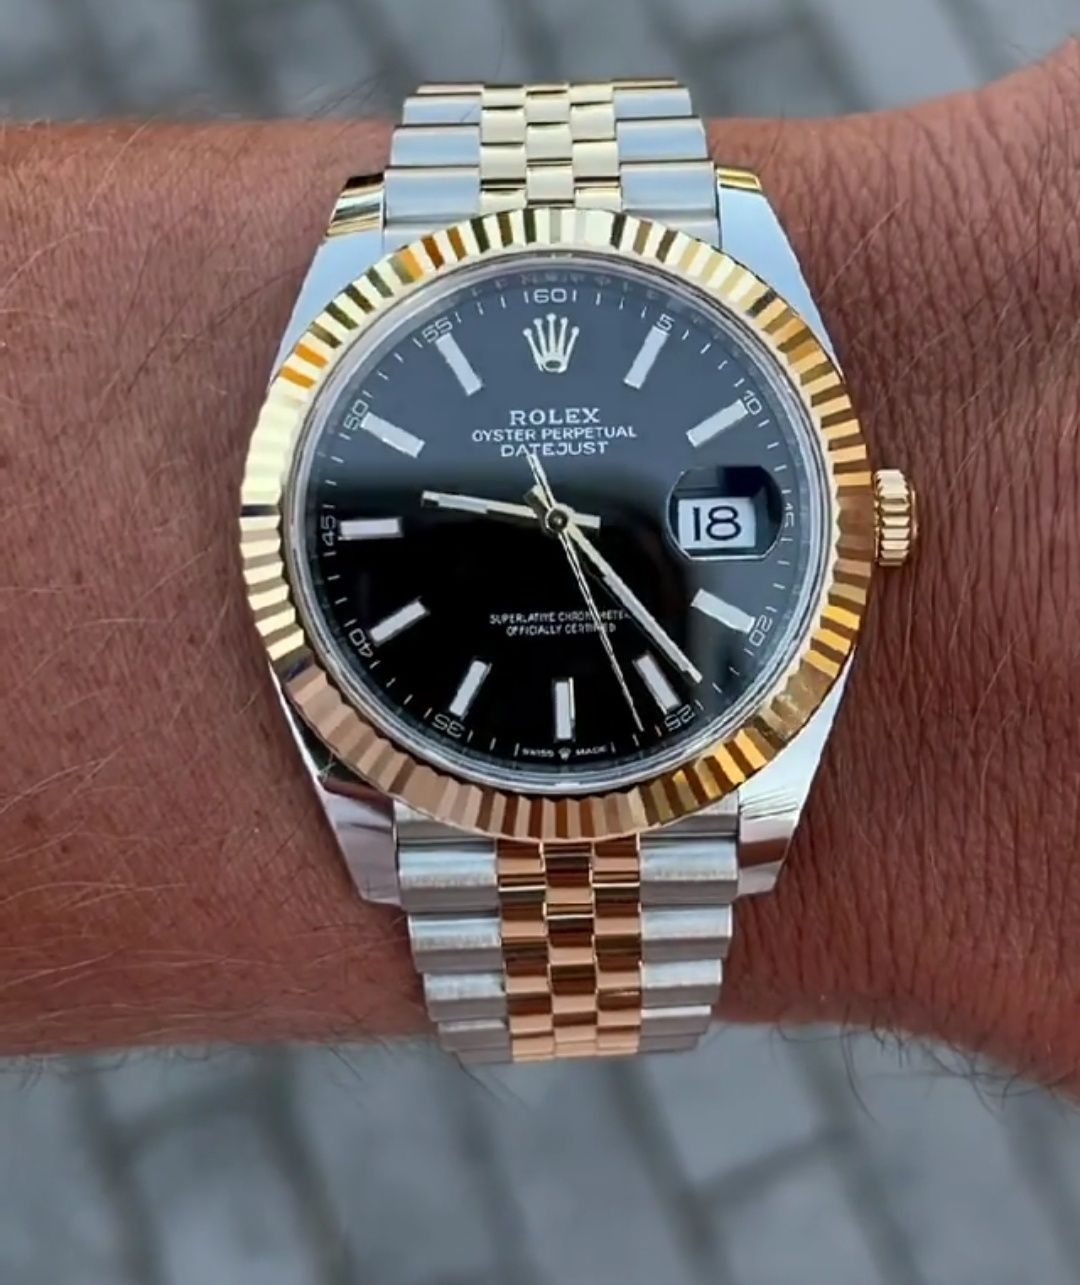 Ceasuri Rolex Automatic - 249 lei